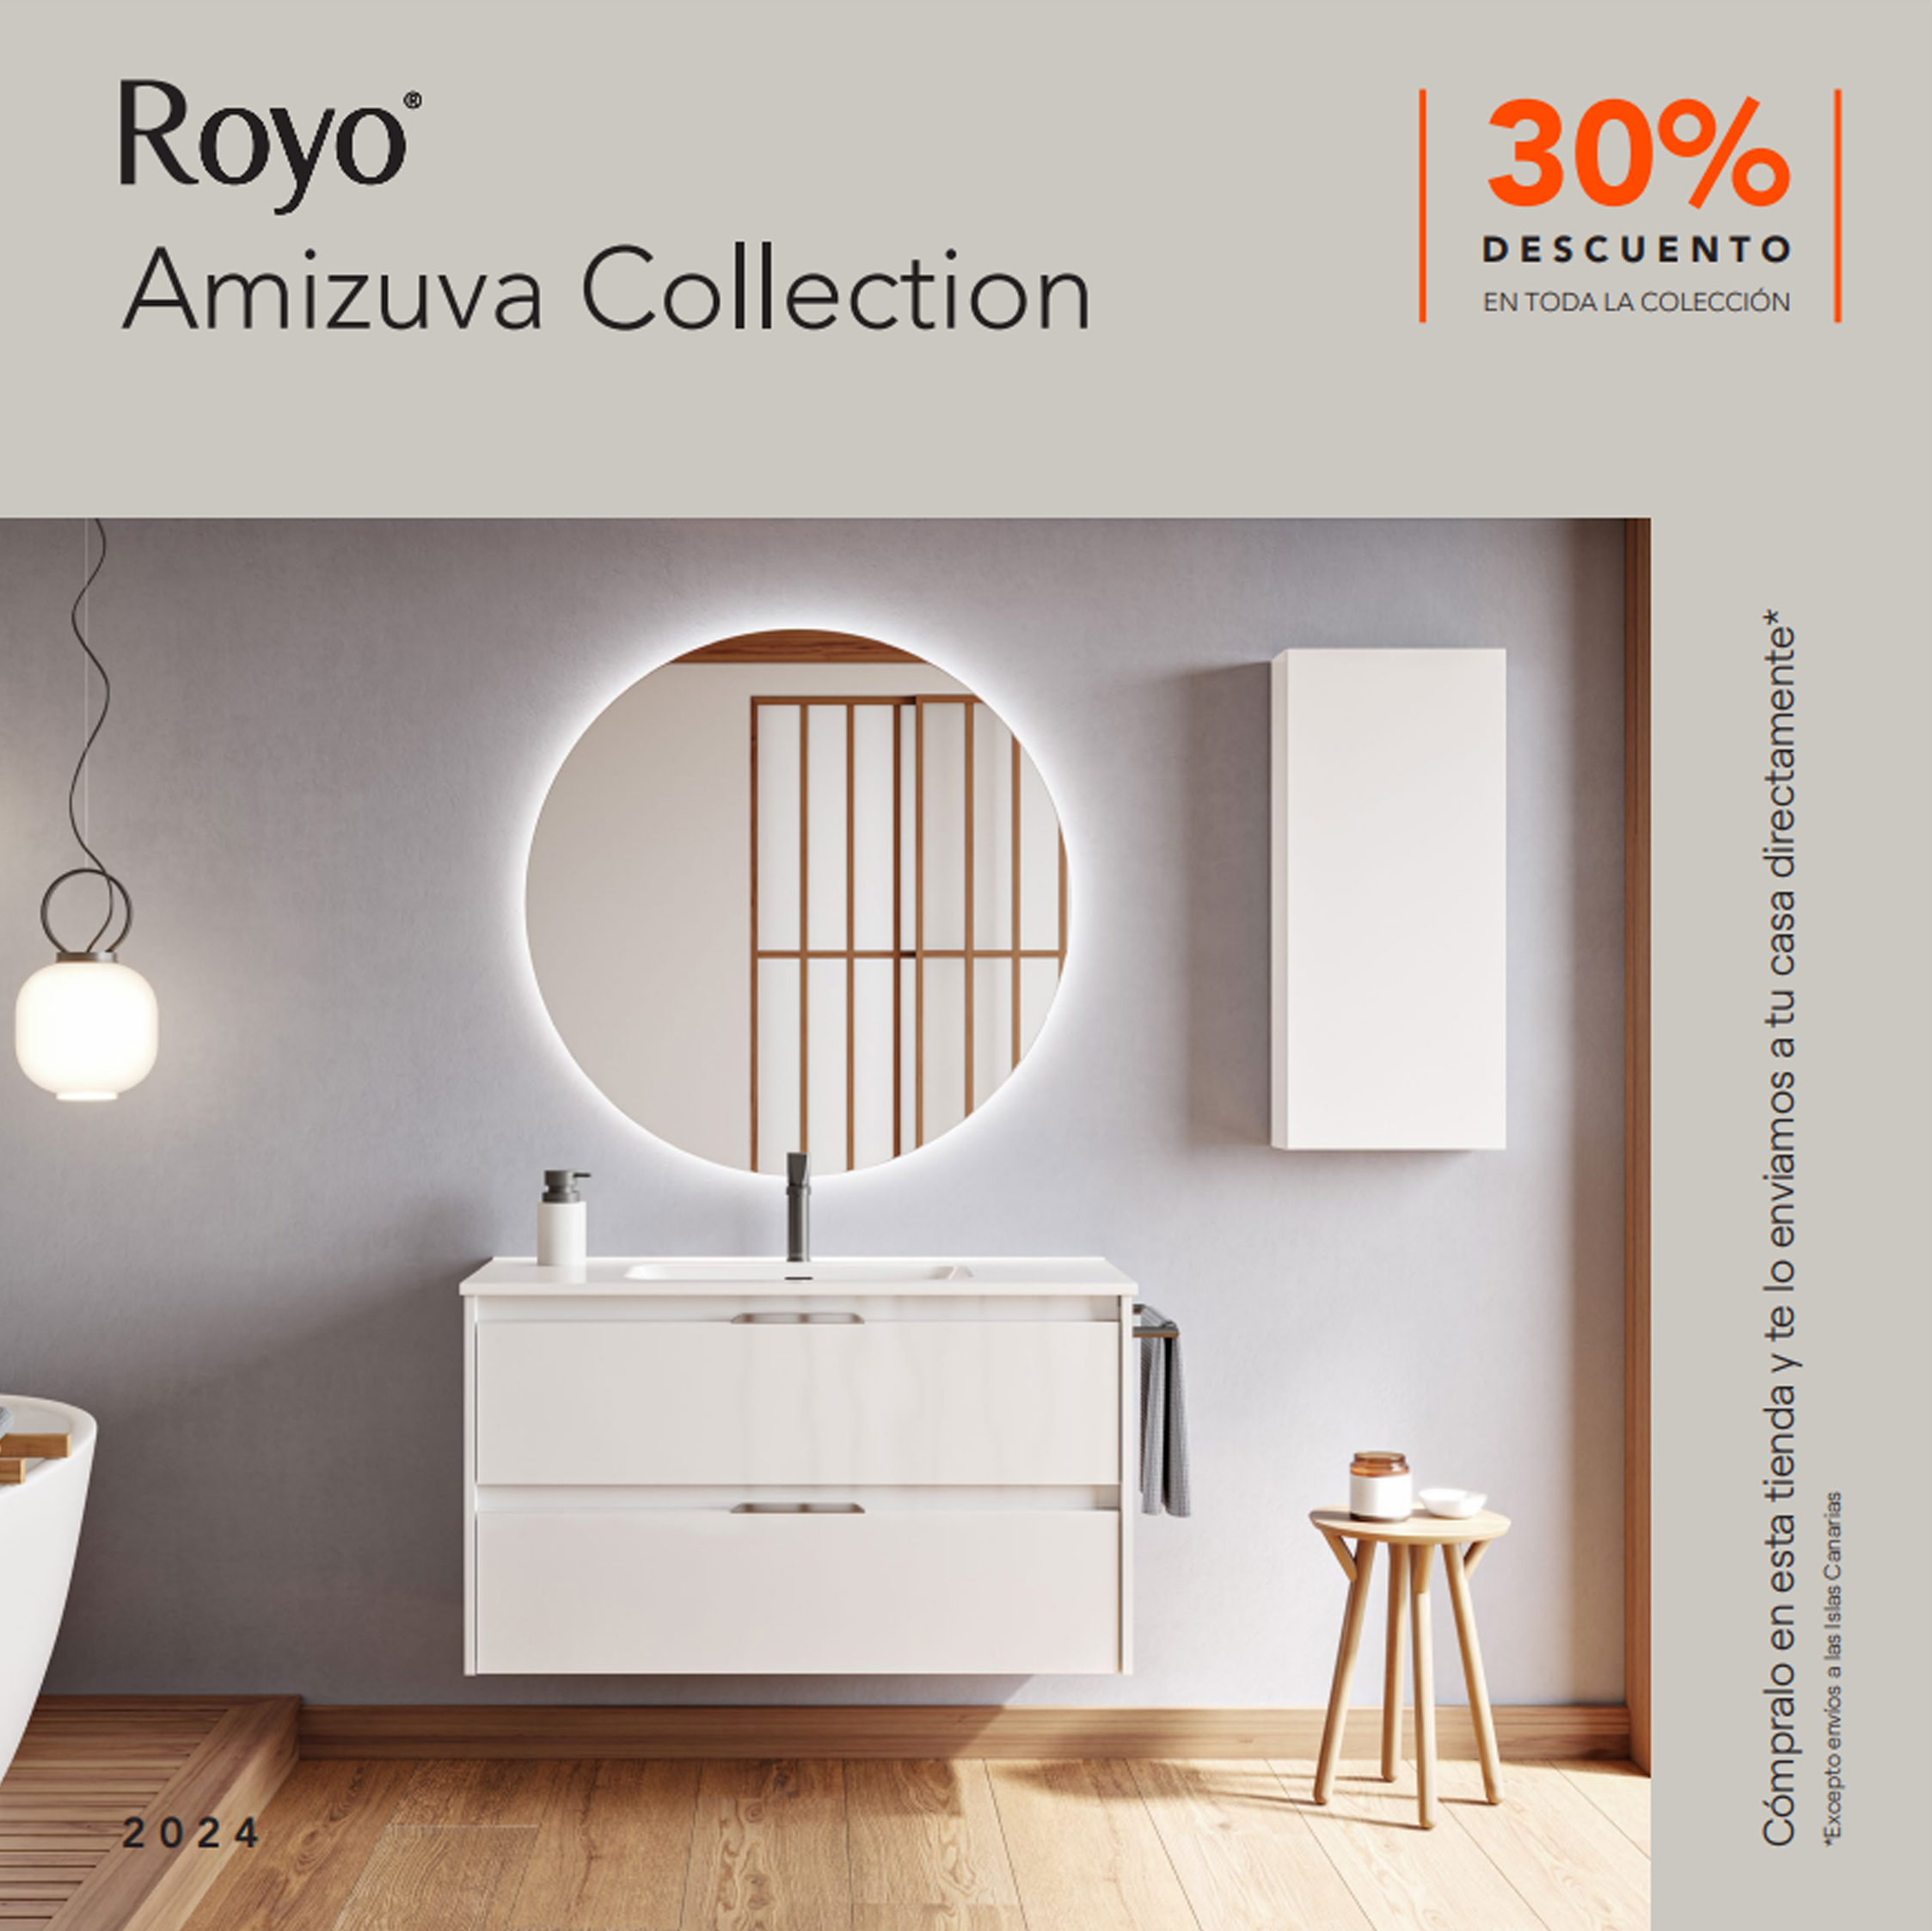 Catálogo Royo Amizuva Collection